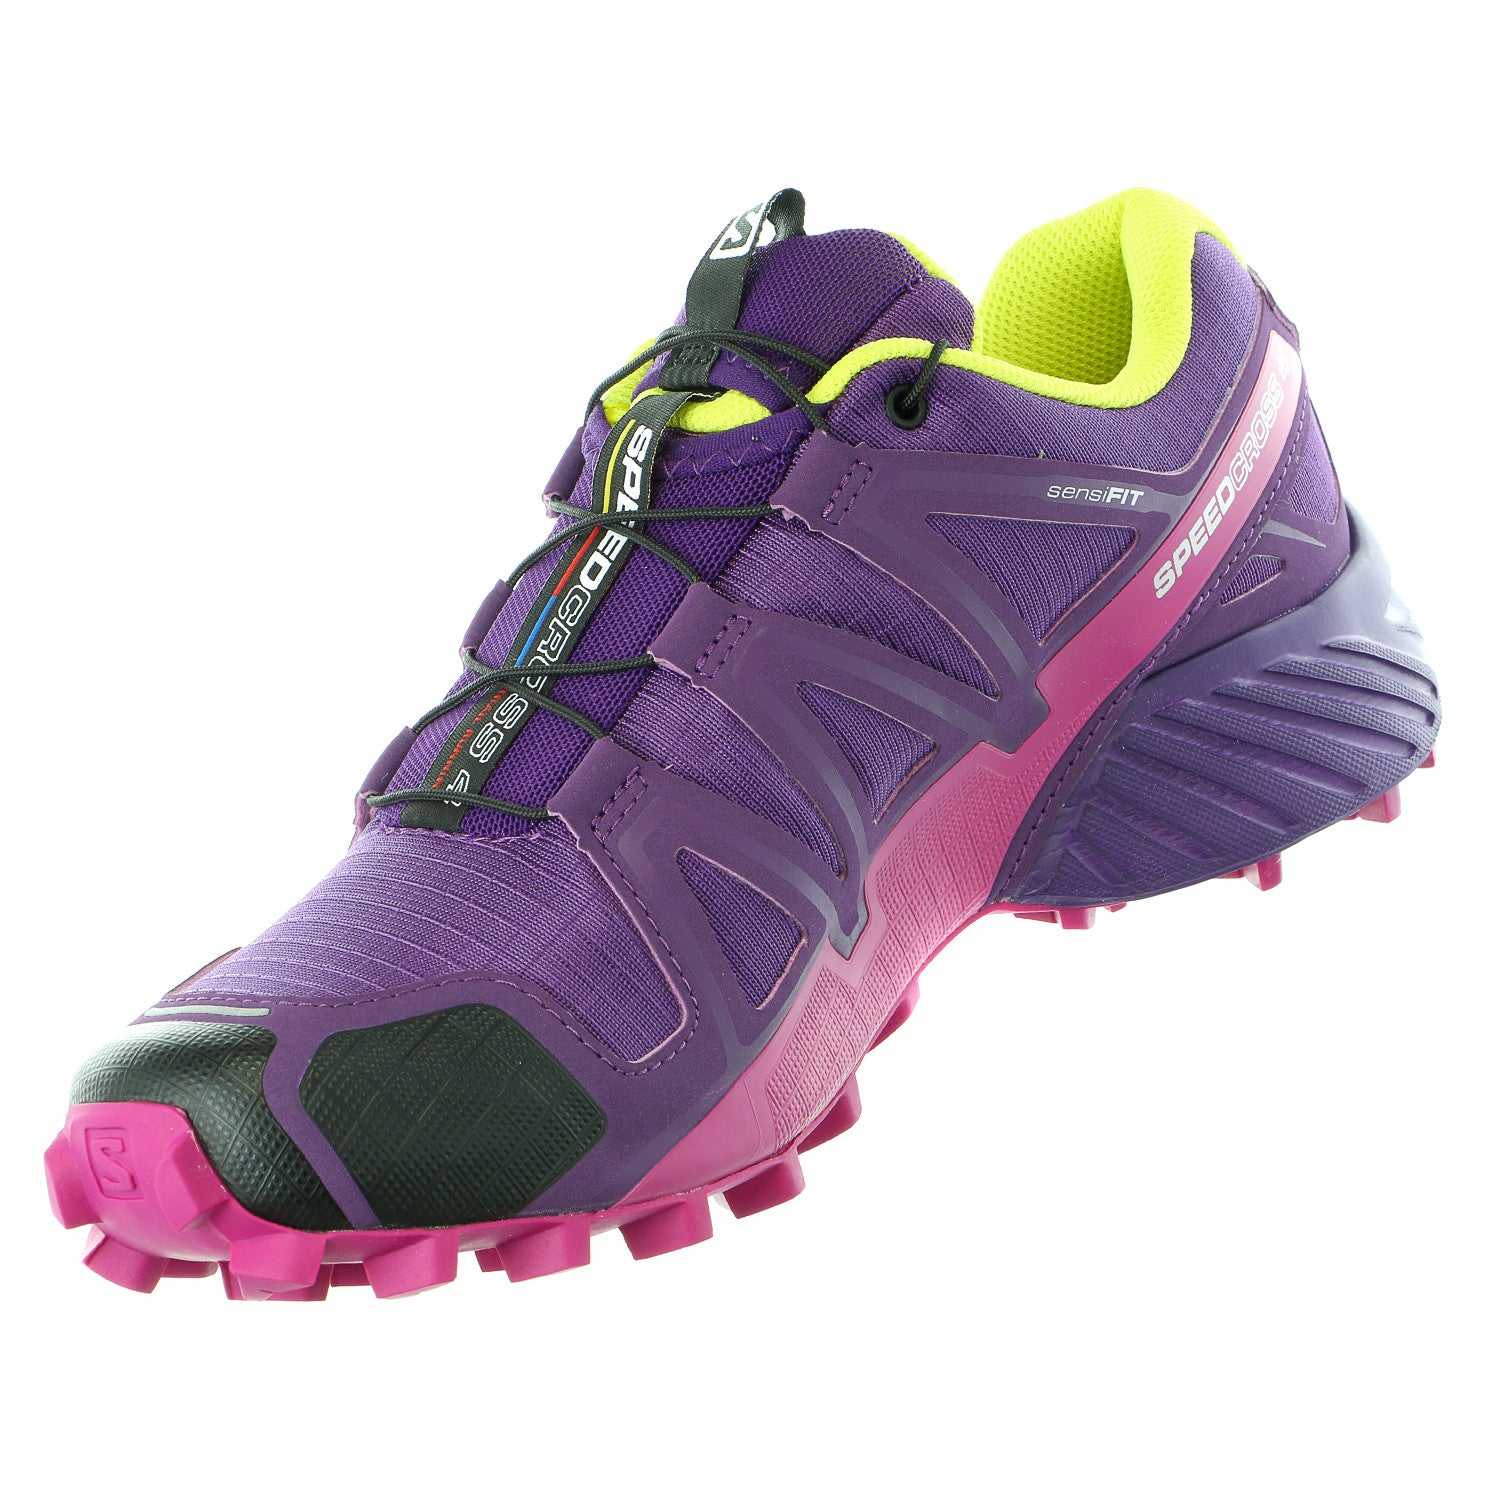 Salomon Speedcross 4 Trail Running In Blue Purple Shoe For Women-Salomon  Speedcross 4 Black Friday